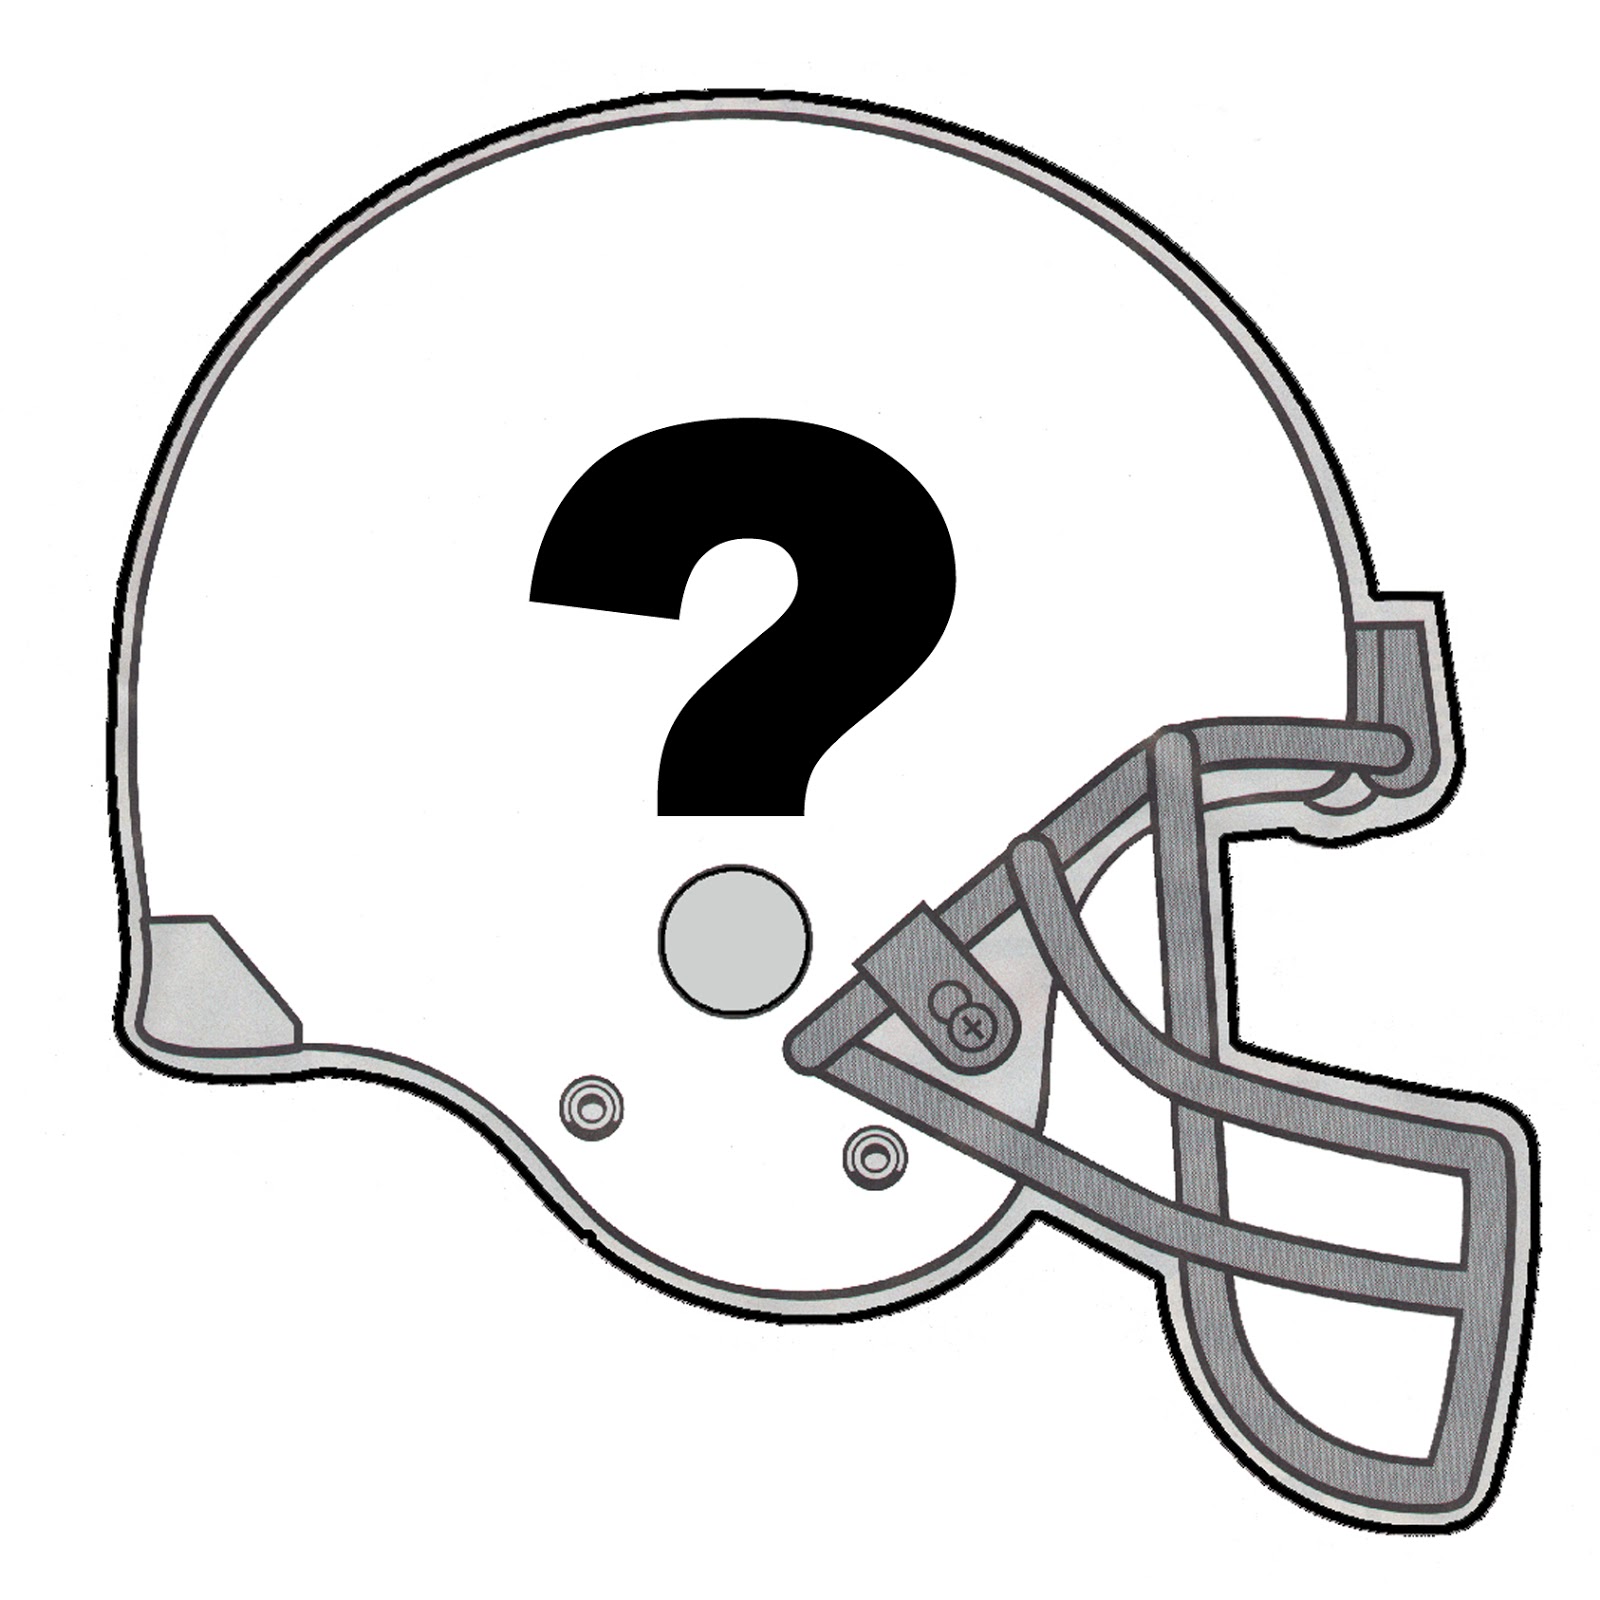 Football helmet clip art vector free image